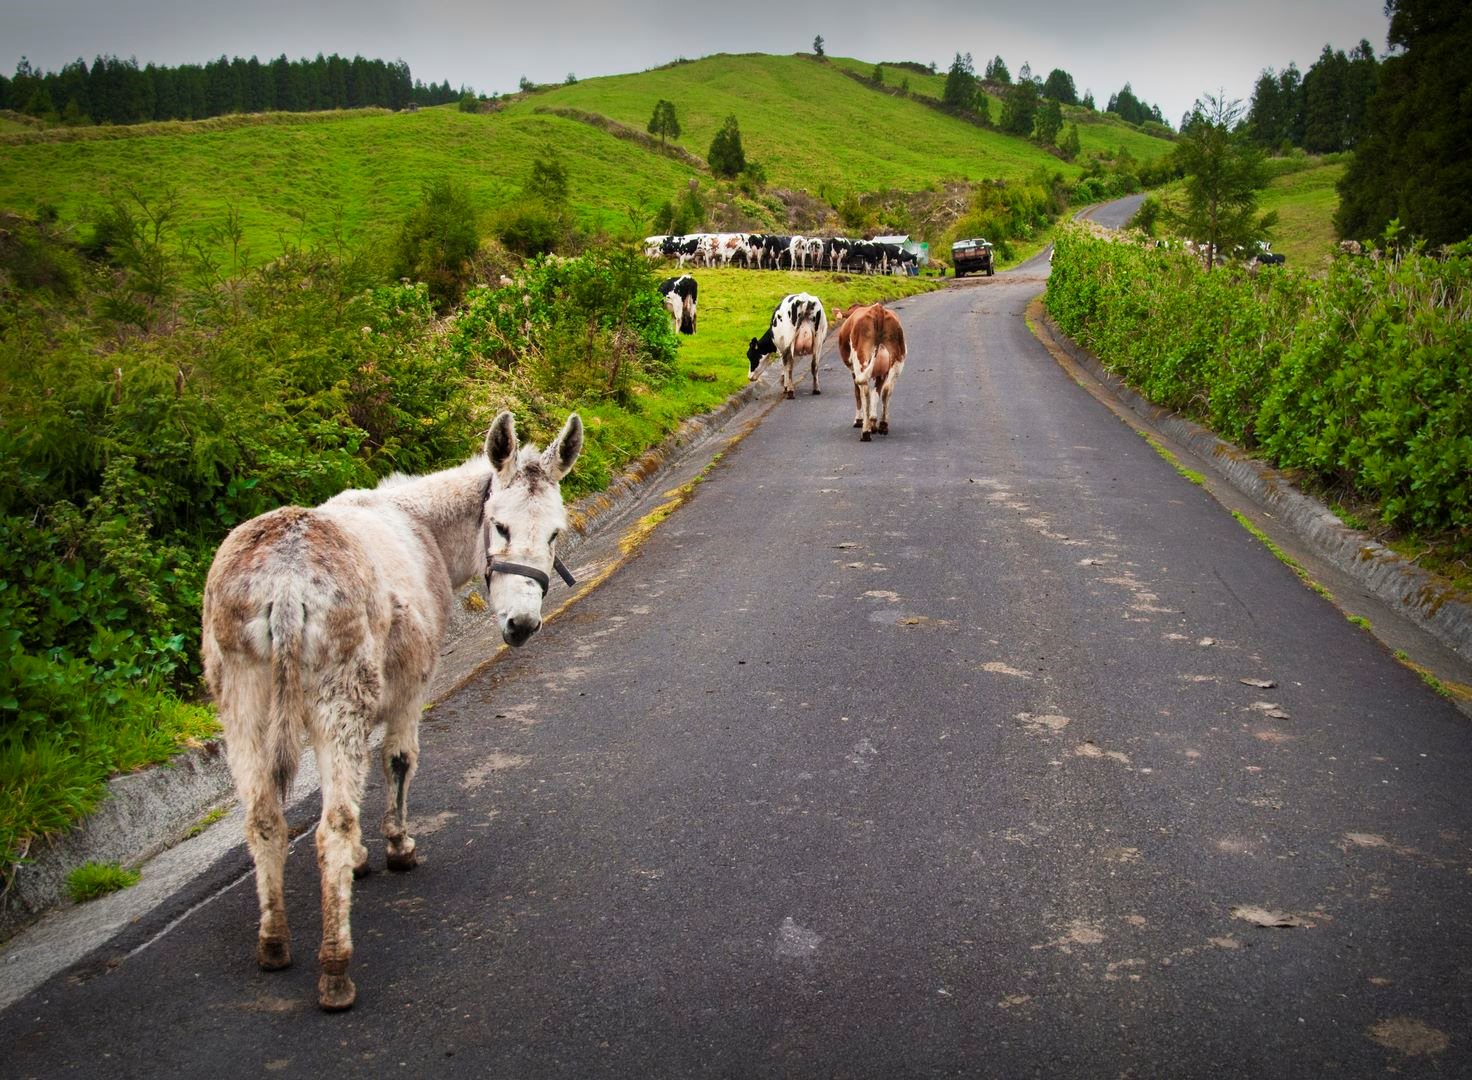 Donkey & Cows - Bike Tour - São Miguel Island